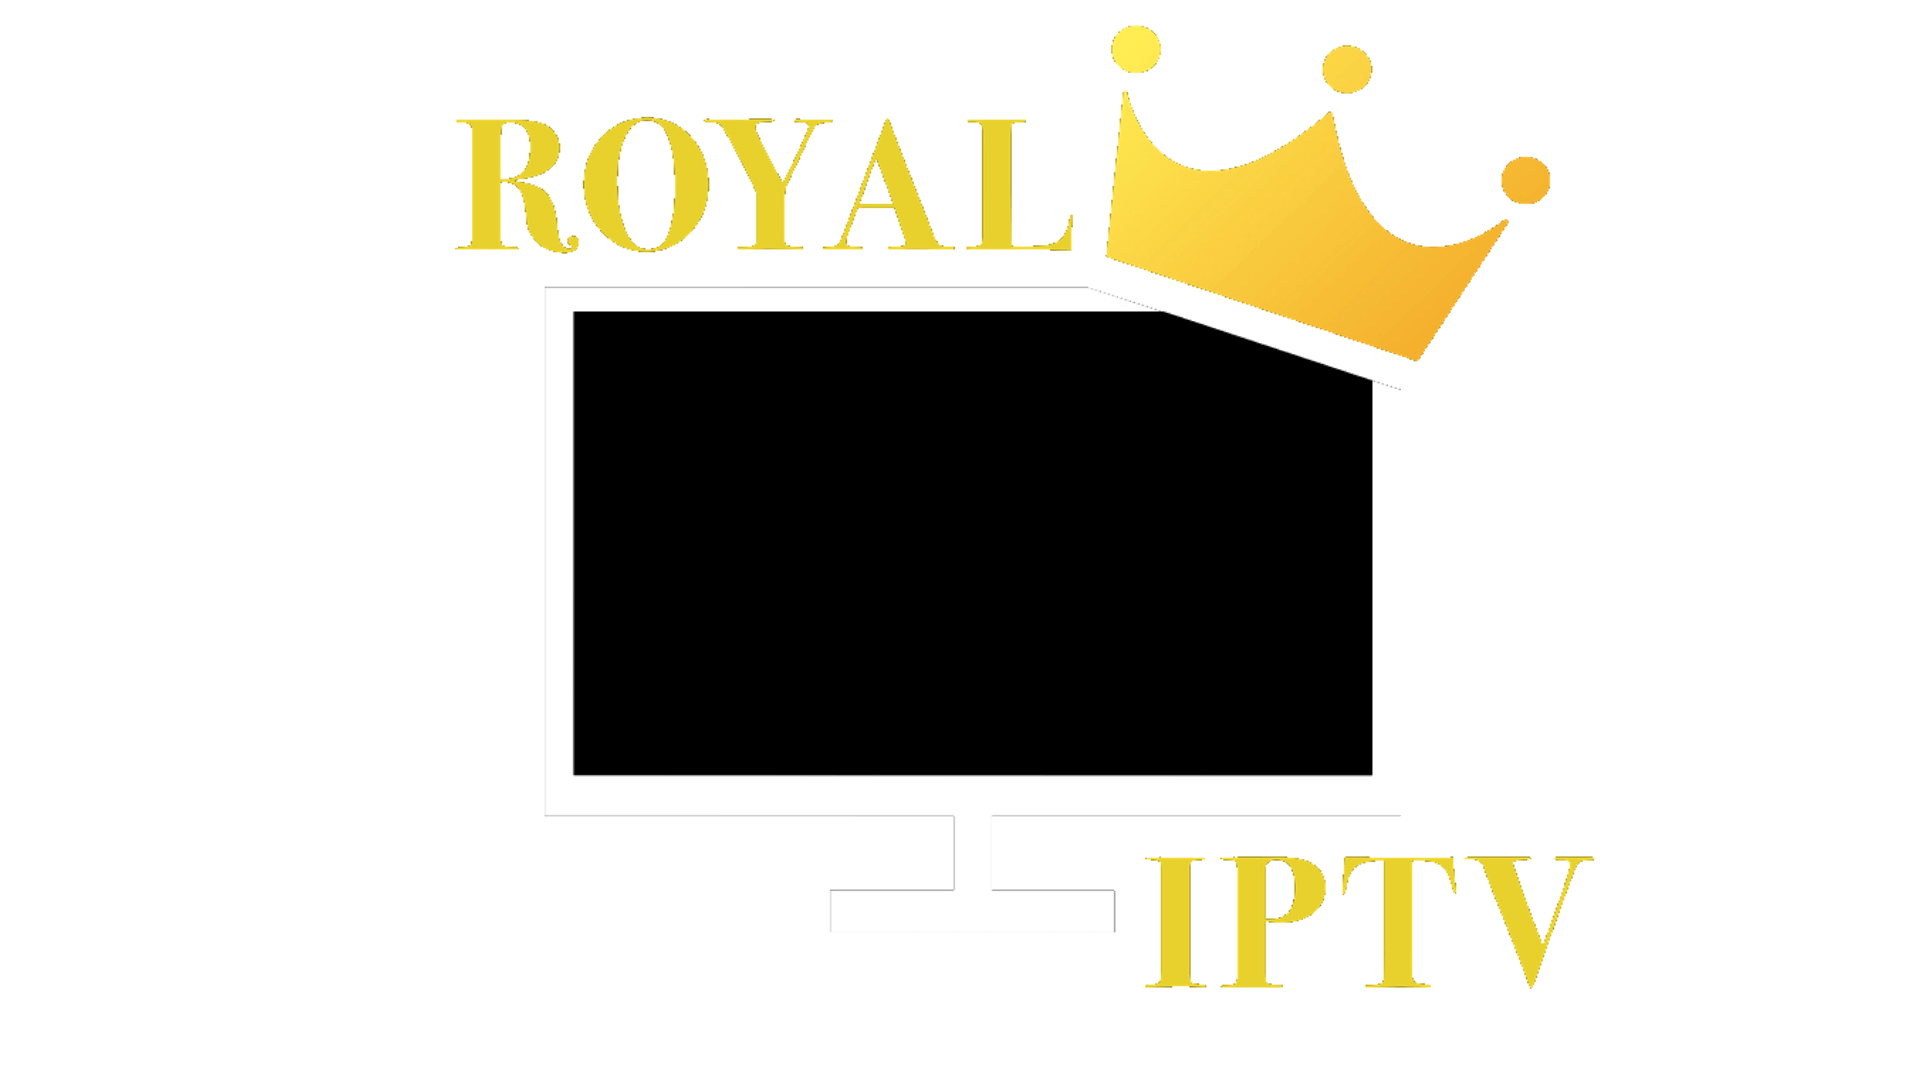 اشتراك لمدة 6 أشهر 100٪ ipTV مع ROYAL IPTV أب سمارت IPTV